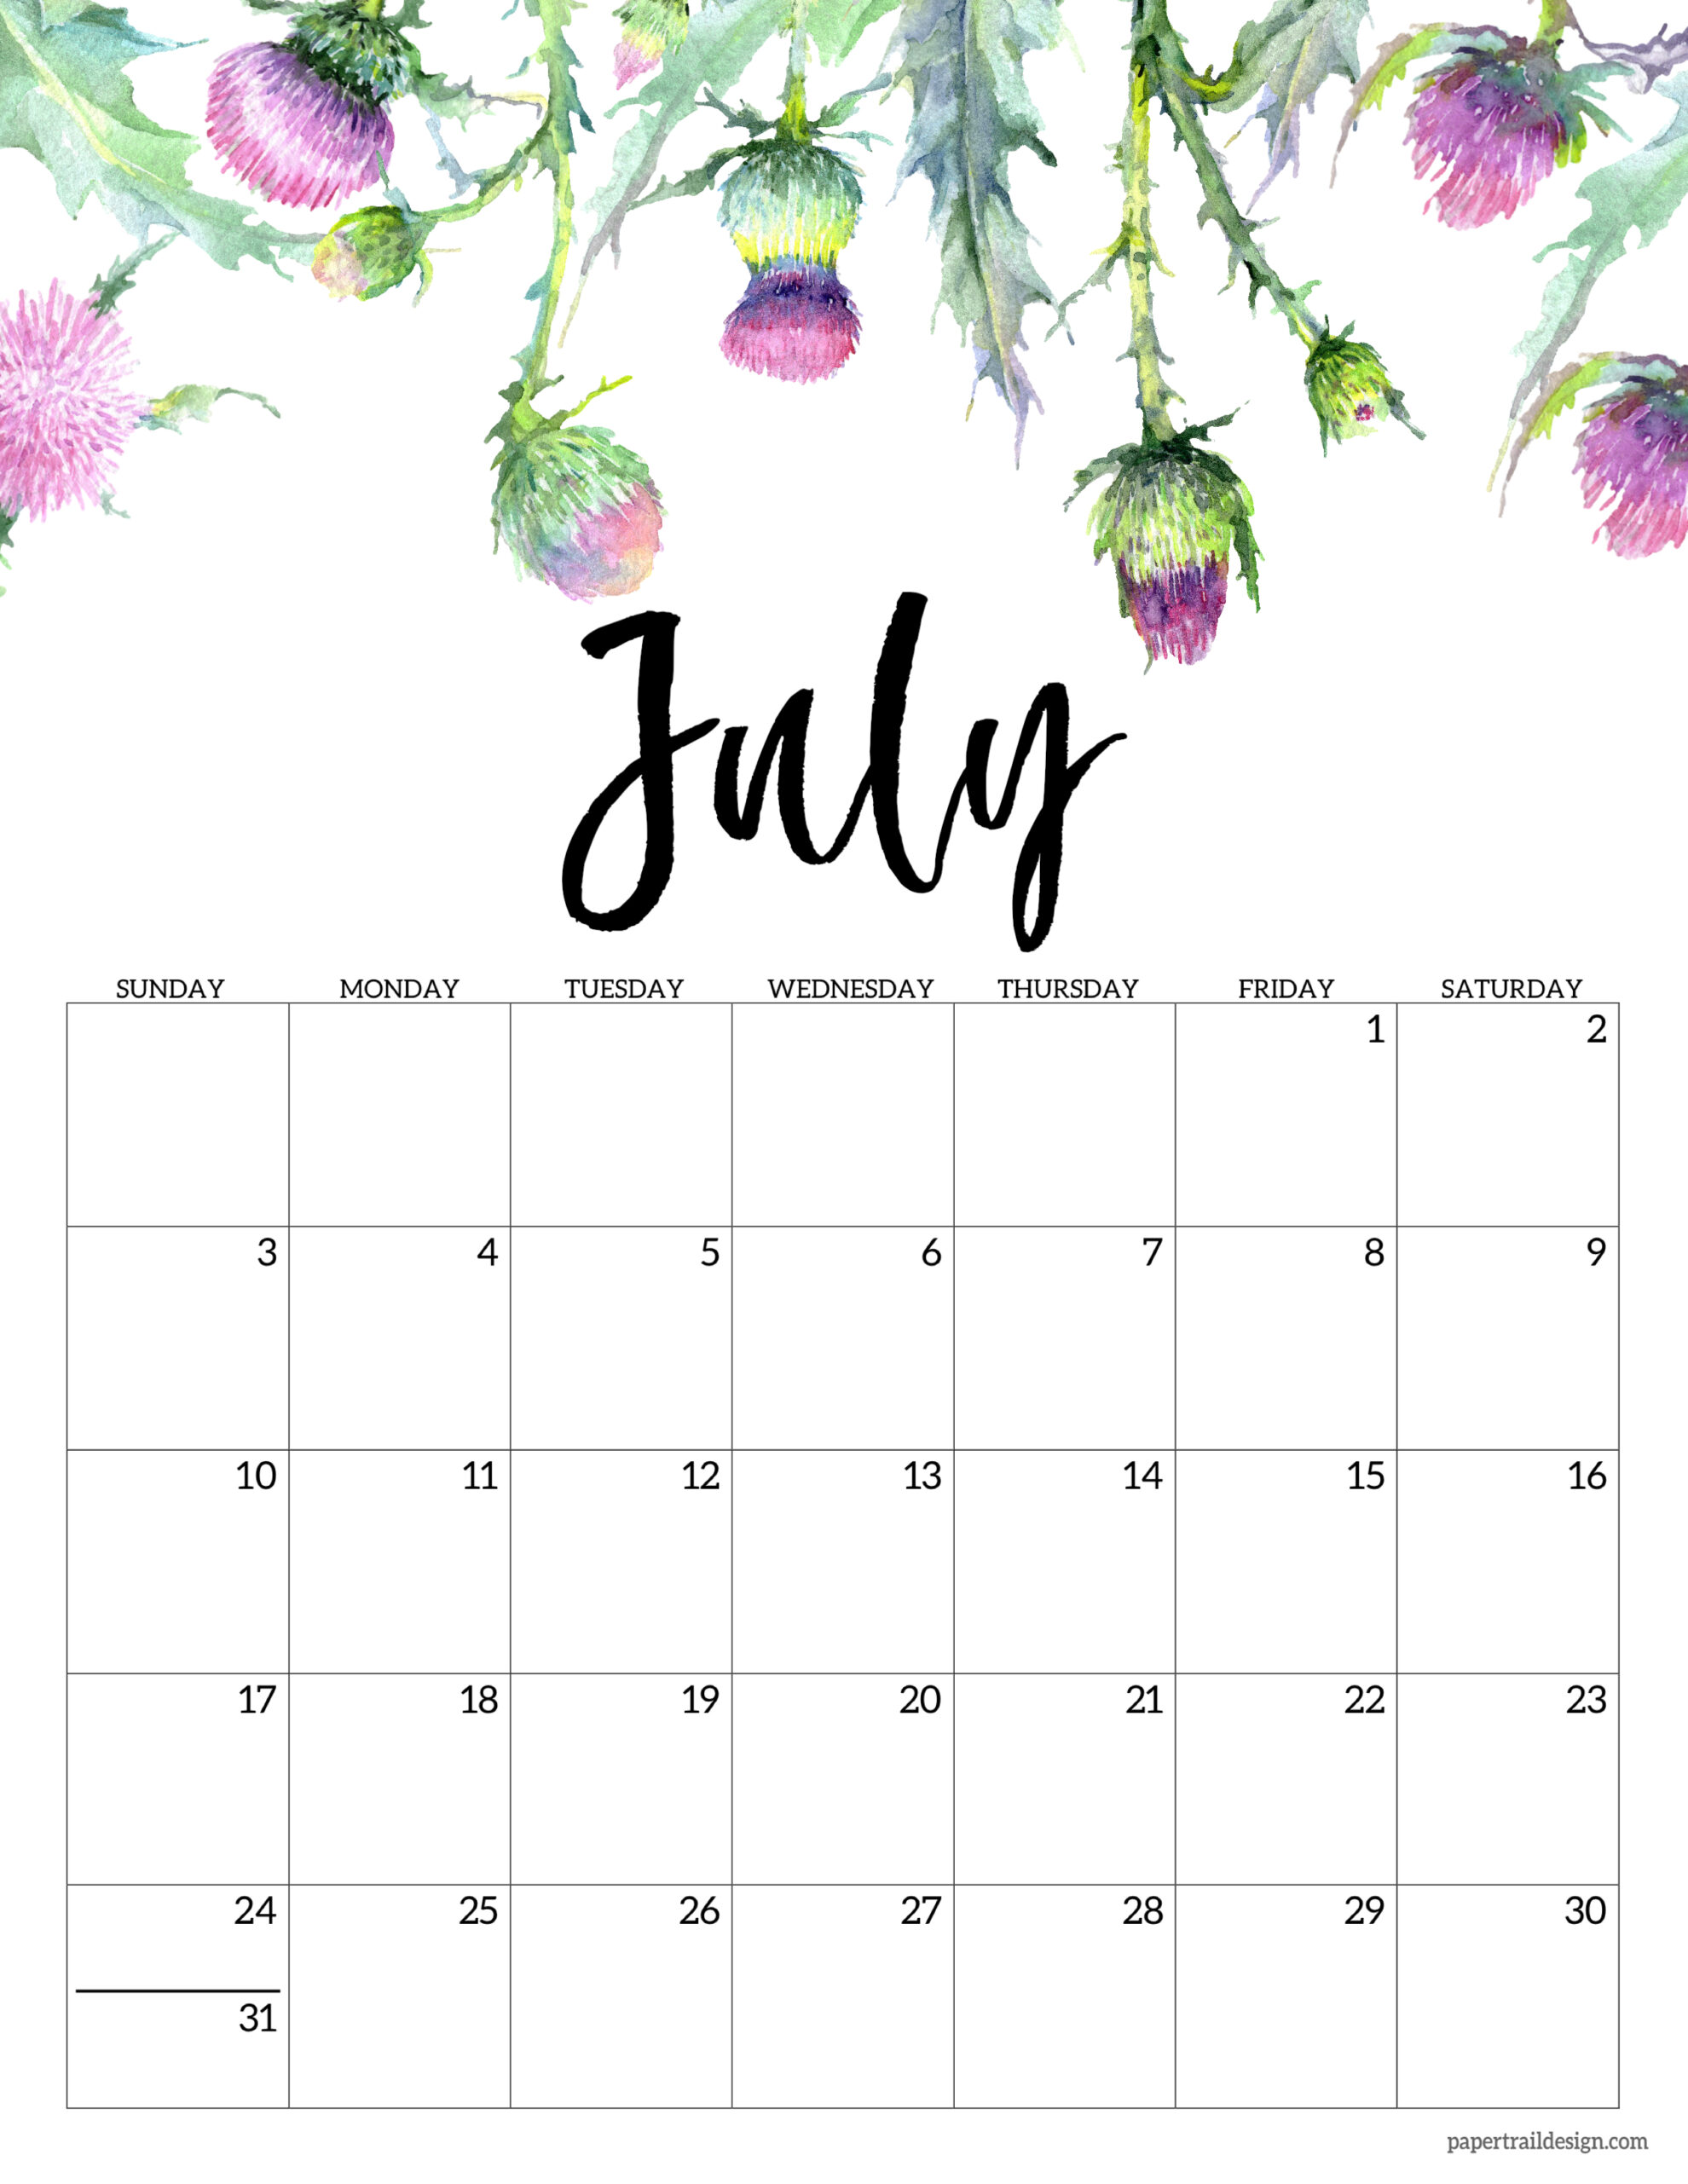 July 2022 calendar wallpaper